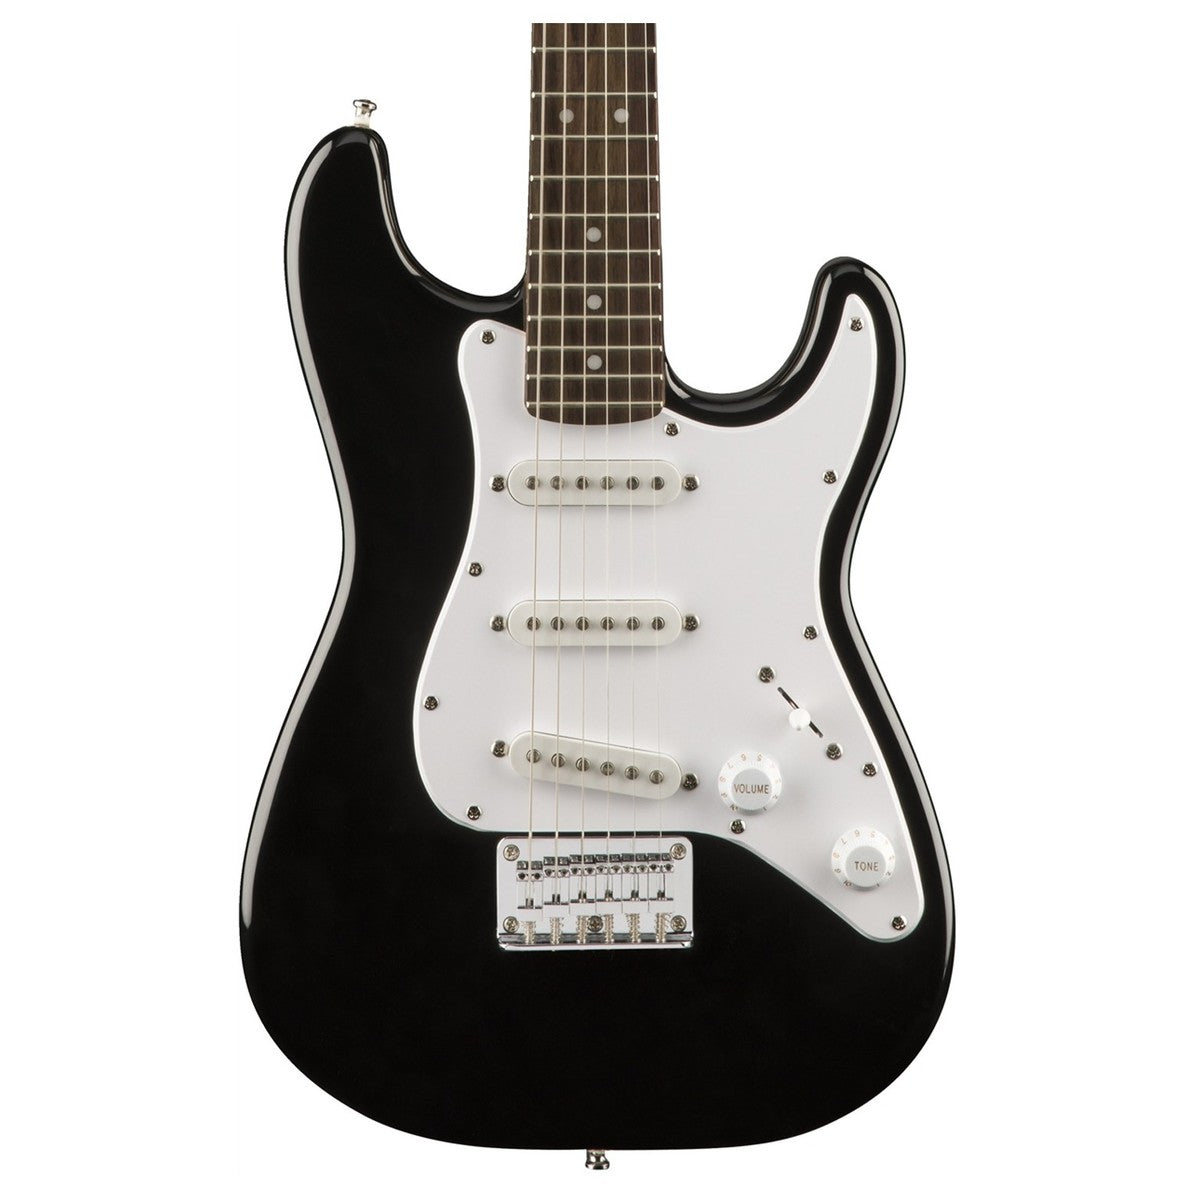 Squier Mini Stratocaster Size 3/4 Black